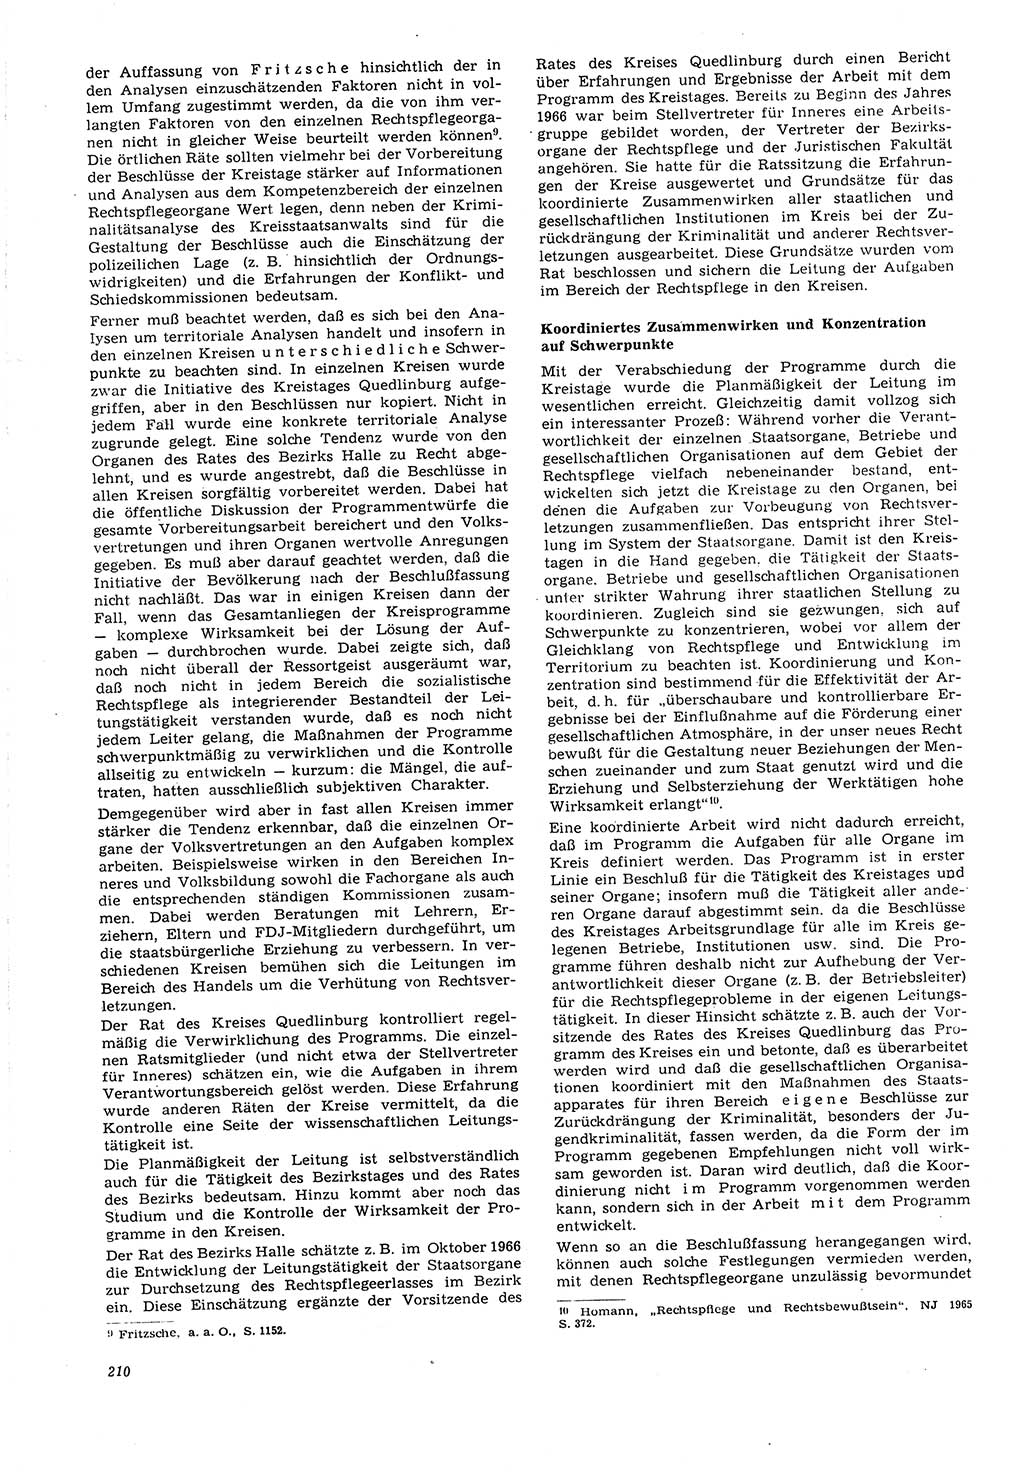 Neue Justiz (NJ), Zeitschrift für Recht und Rechtswissenschaft [Deutsche Demokratische Republik (DDR)], 21. Jahrgang 1967, Seite 210 (NJ DDR 1967, S. 210)